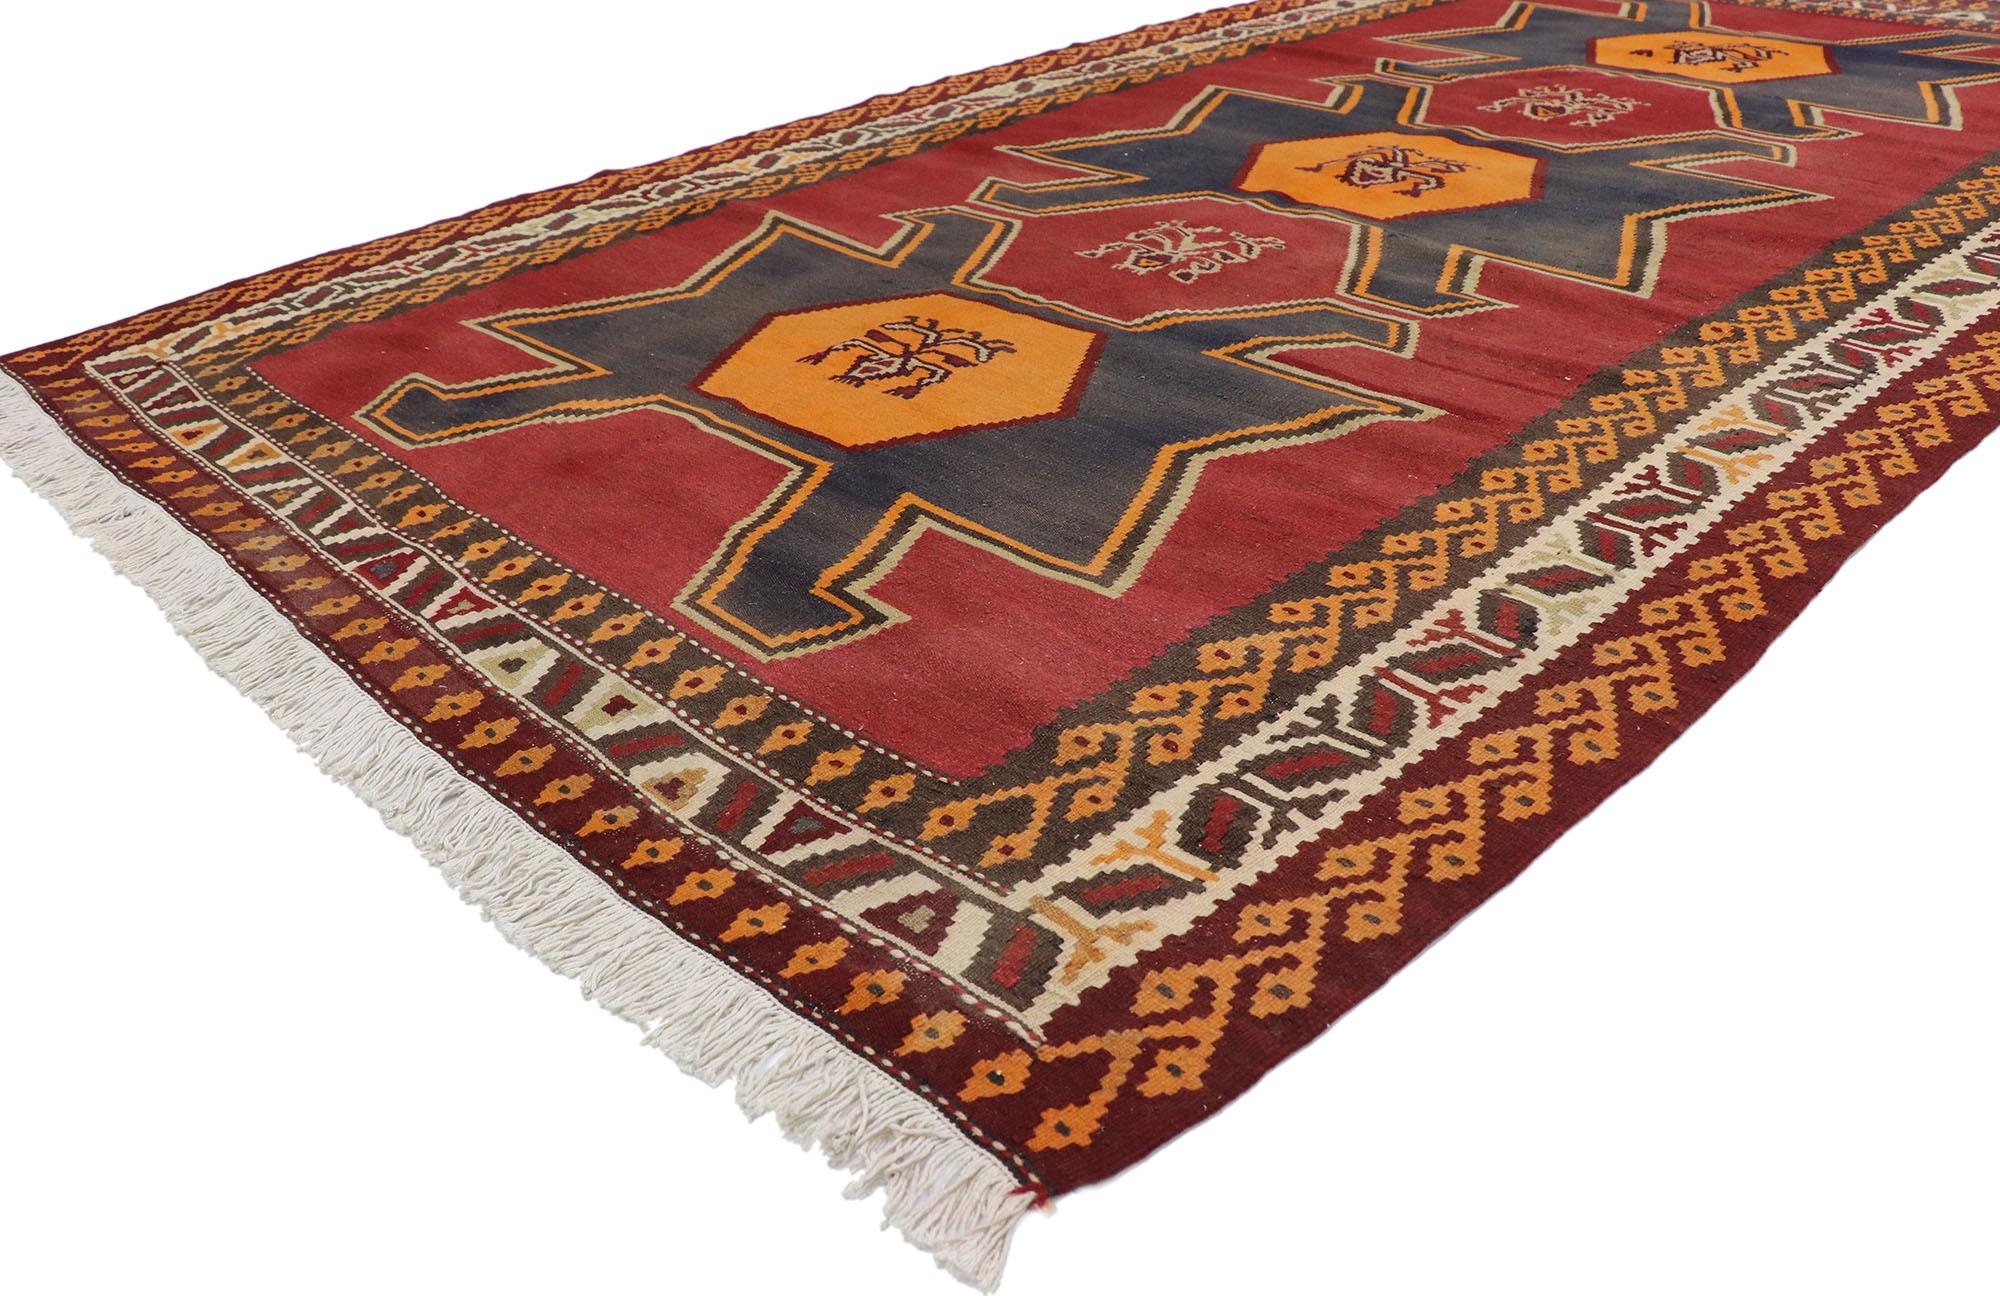 78036 Vintage Persian Shiraz Kilim Teppich mit Tribal Style 05'06 x 09'08. Voller winziger Details und einem kühnen, ausdrucksstarken Design, kombiniert mit leuchtenden Farben und Stammesstil, ist dieser handgewebte persische Shiraz-Kelim aus Wolle